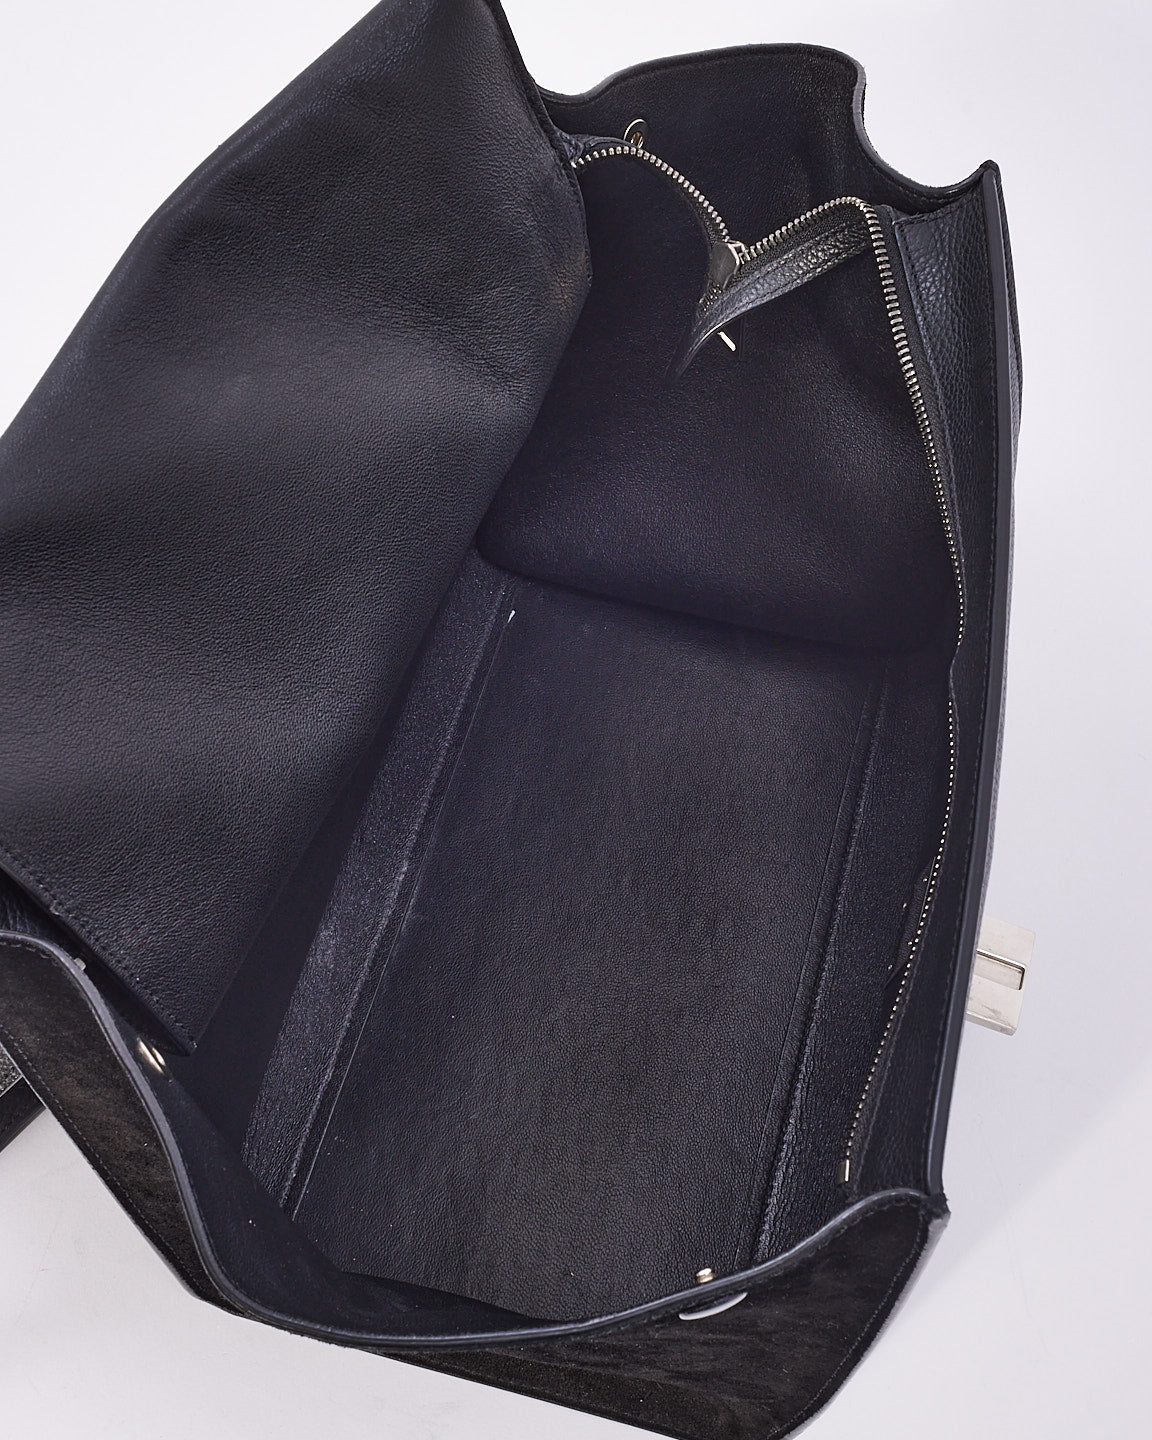 Celine Black Leather & Suede Medium Trapeze Bag